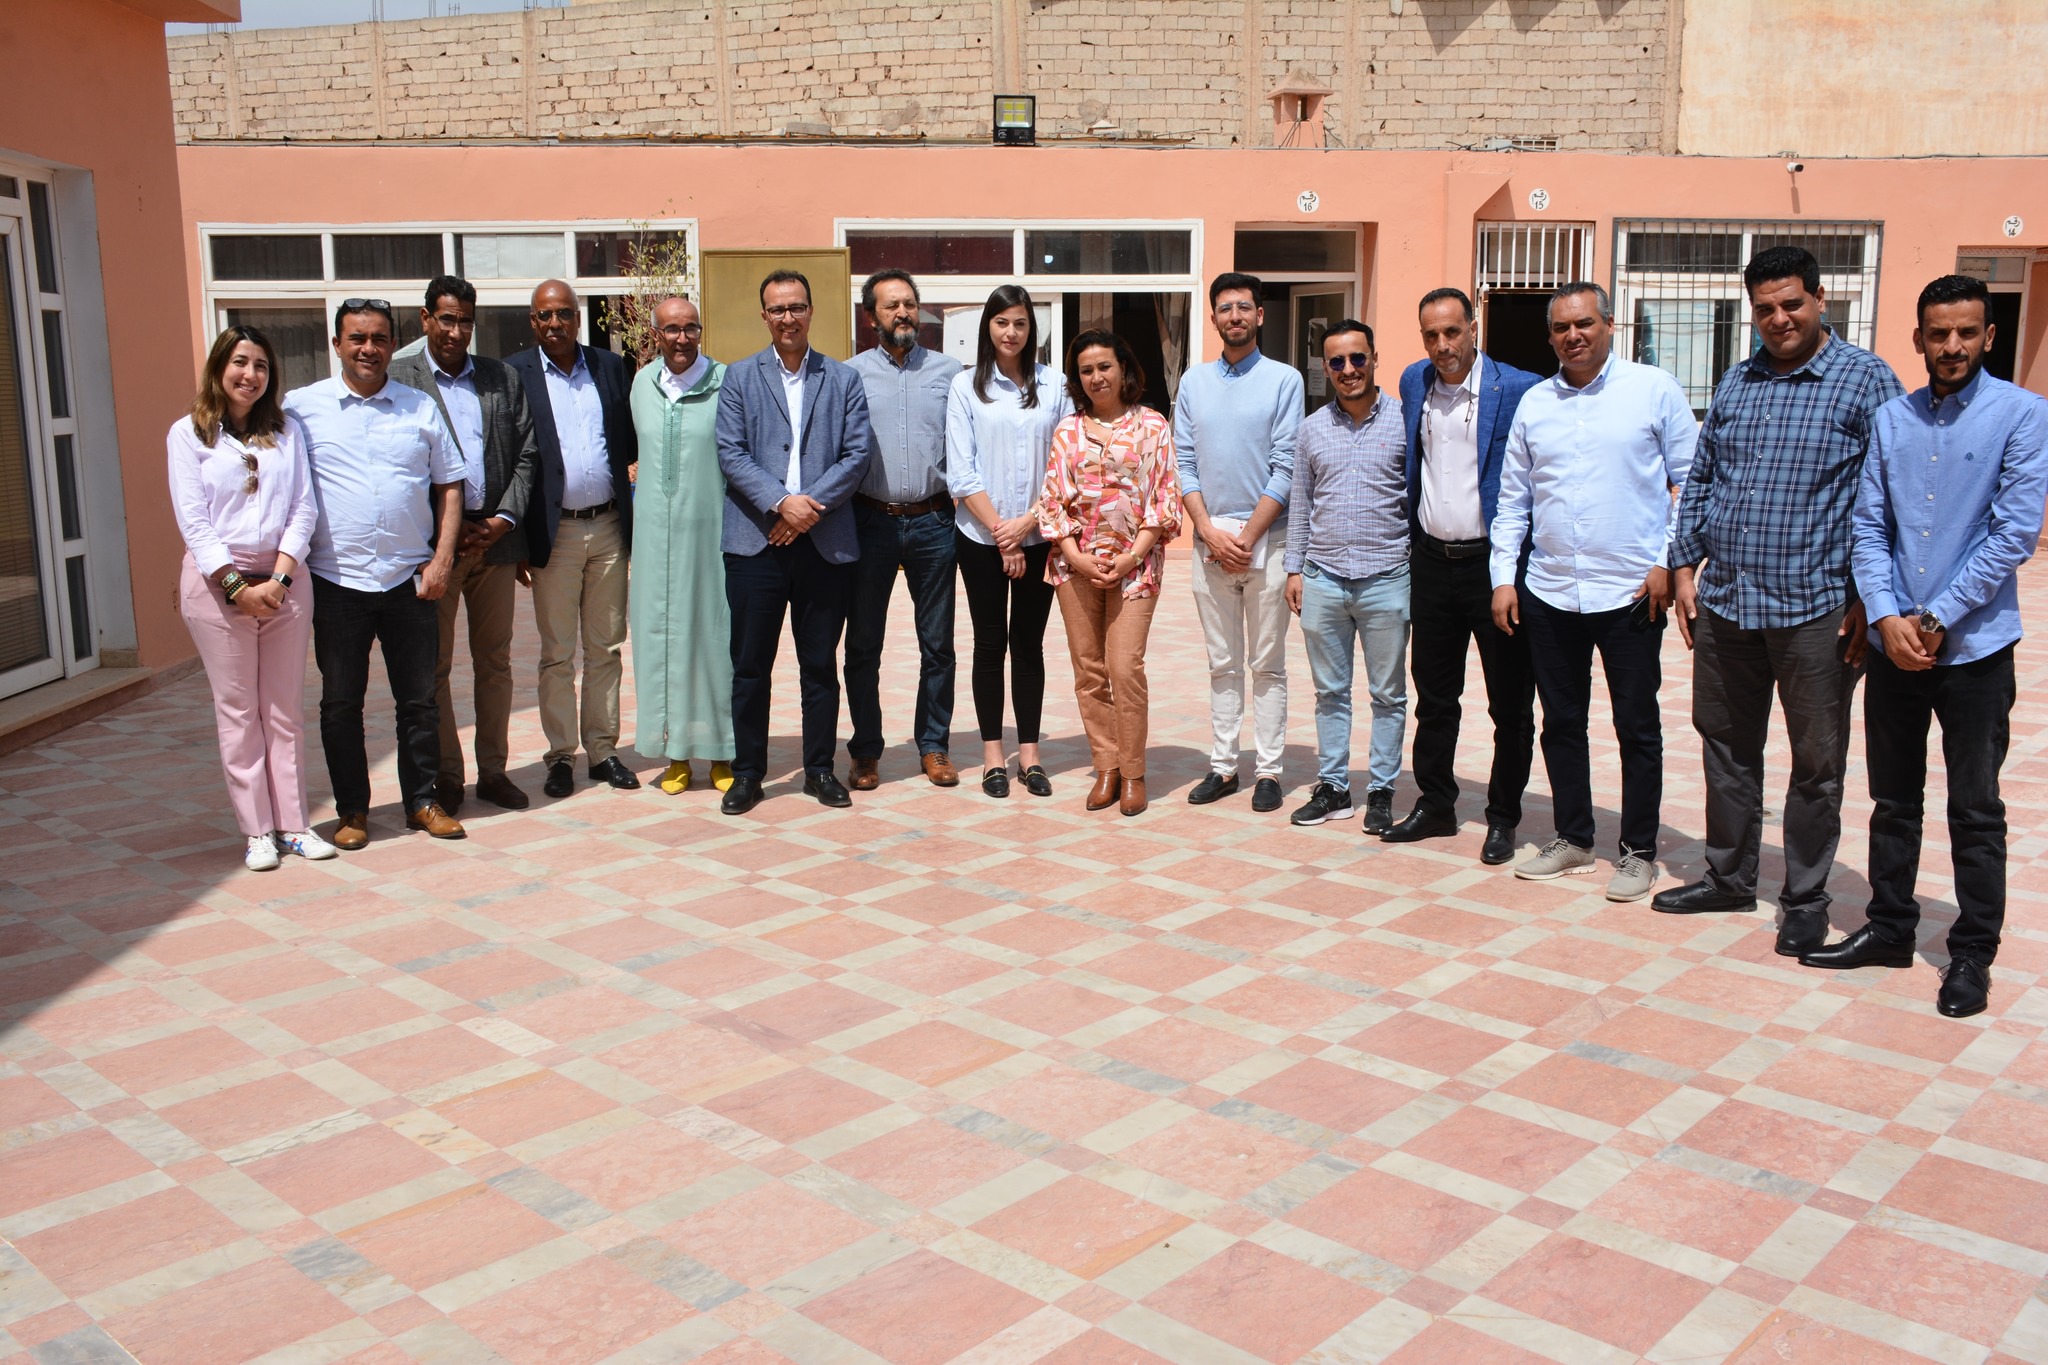 جماعة أيت ملول تستقبل رئيس وأعضاء شبكة الكفاءات الألمانية المغربية لبحث سبل التعاون المشترك.